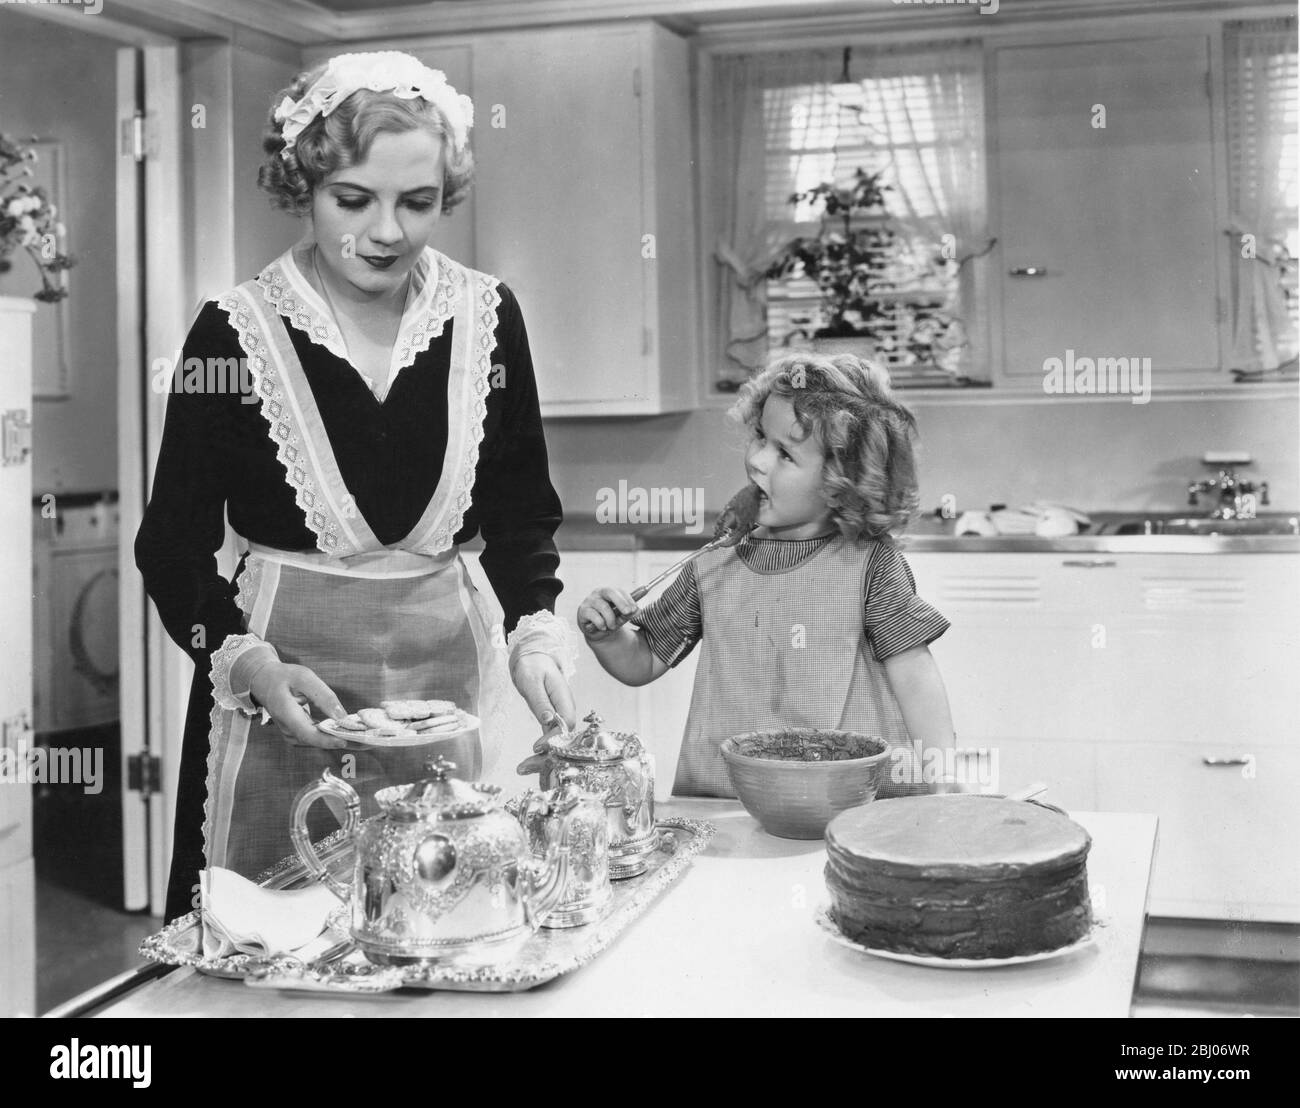 Shirley Jane Temple (*23. April 1928) ist eine mit dem Academy Award ausgezeichnete Schauspielerin, die vor allem dafür bekannt ist, eine ikonische amerikanische Kinderdarstellerin der 1930er Jahre zu sein, obwohl sie auch für ihre diplomatische Karriere als Erwachsene bekannt ist. Nach dem Aufstieg zu Ruhm im Alter von sechs mit ihrem Durchbruch Leistung in Bright Eyes im Jahr 1934, Sie spielte in einer Reihe von sehr erfolgreichen Filmen, die ihre weit verbreitete öffentliche Verheitung gewann und sah sie die Top-Star an der amerikanischen Kasse während der Höhe der Depression. Als junge Erwachsene in den 1940er Jahren spielte sie in Filmen mit. Im späteren Leben wurde sie eine Einheit Stockfoto